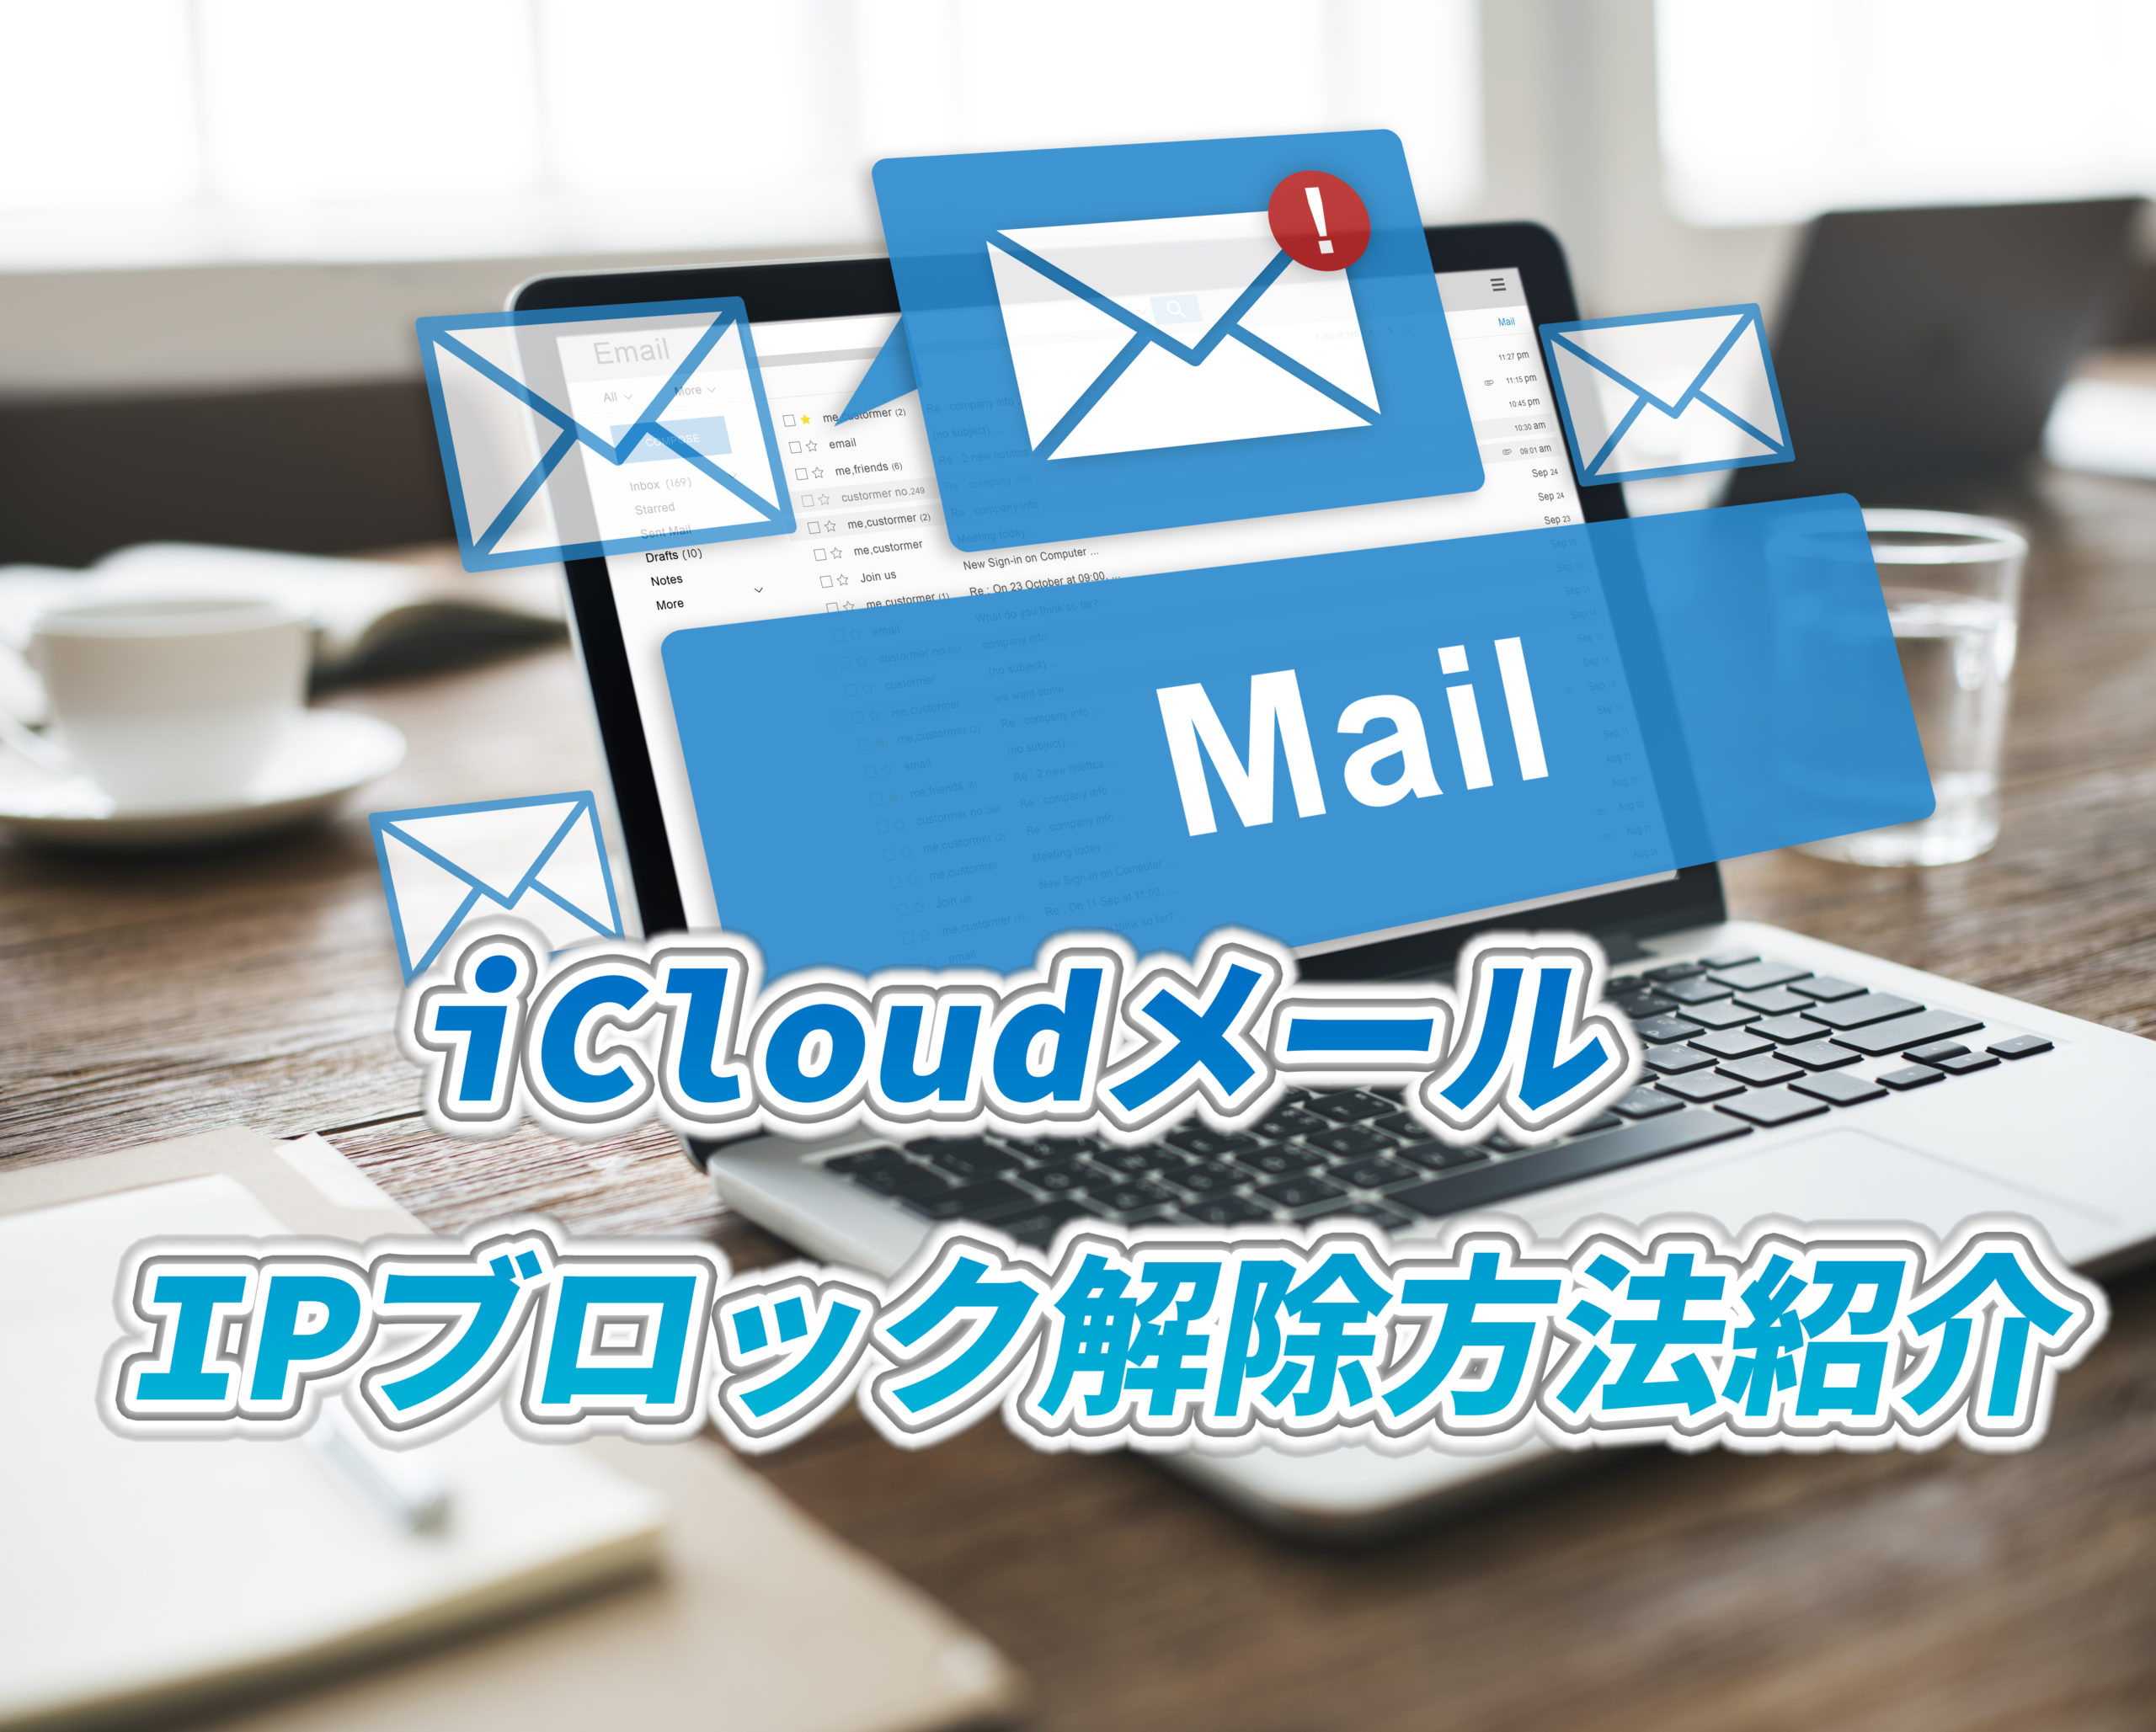 【解決】iCloudメールがシステムメールサーバーからIPブロックされた際の解除方法紹介